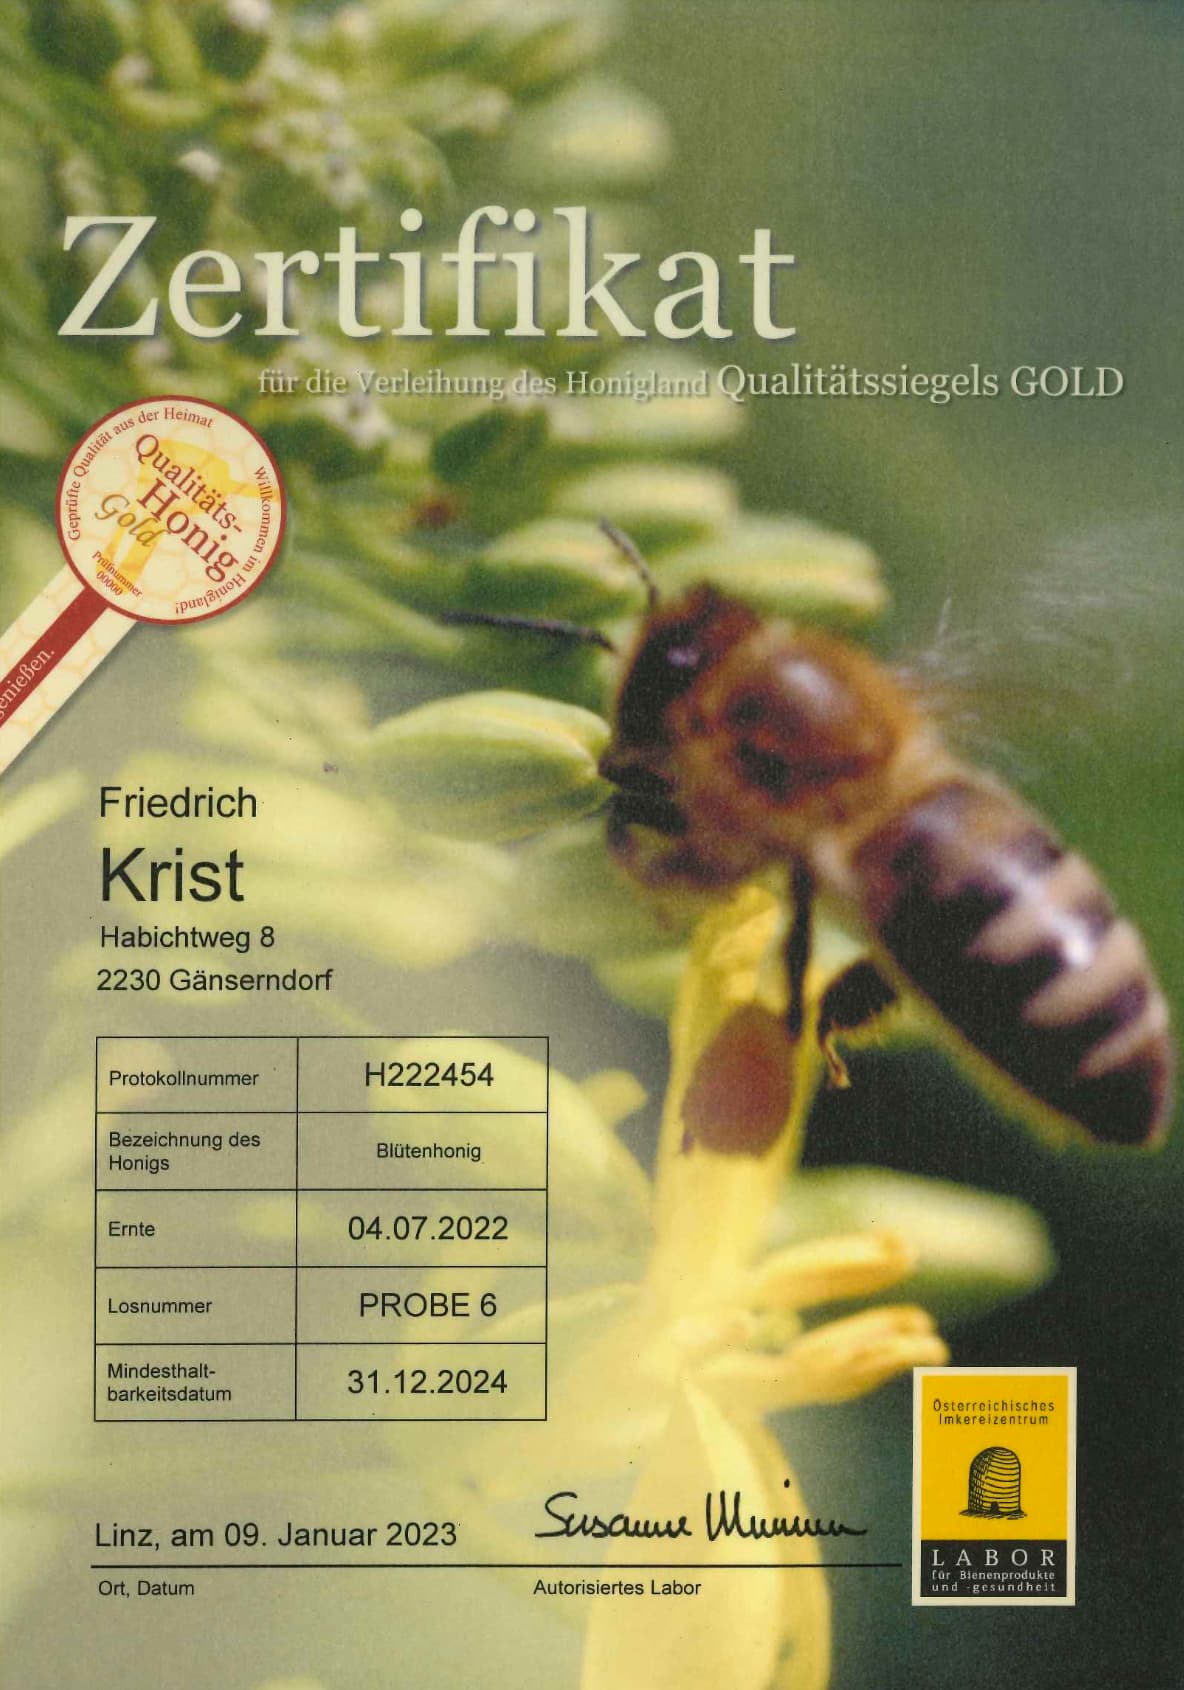 Zertifikat Qualitäts-Honig Gold Blütenhonig